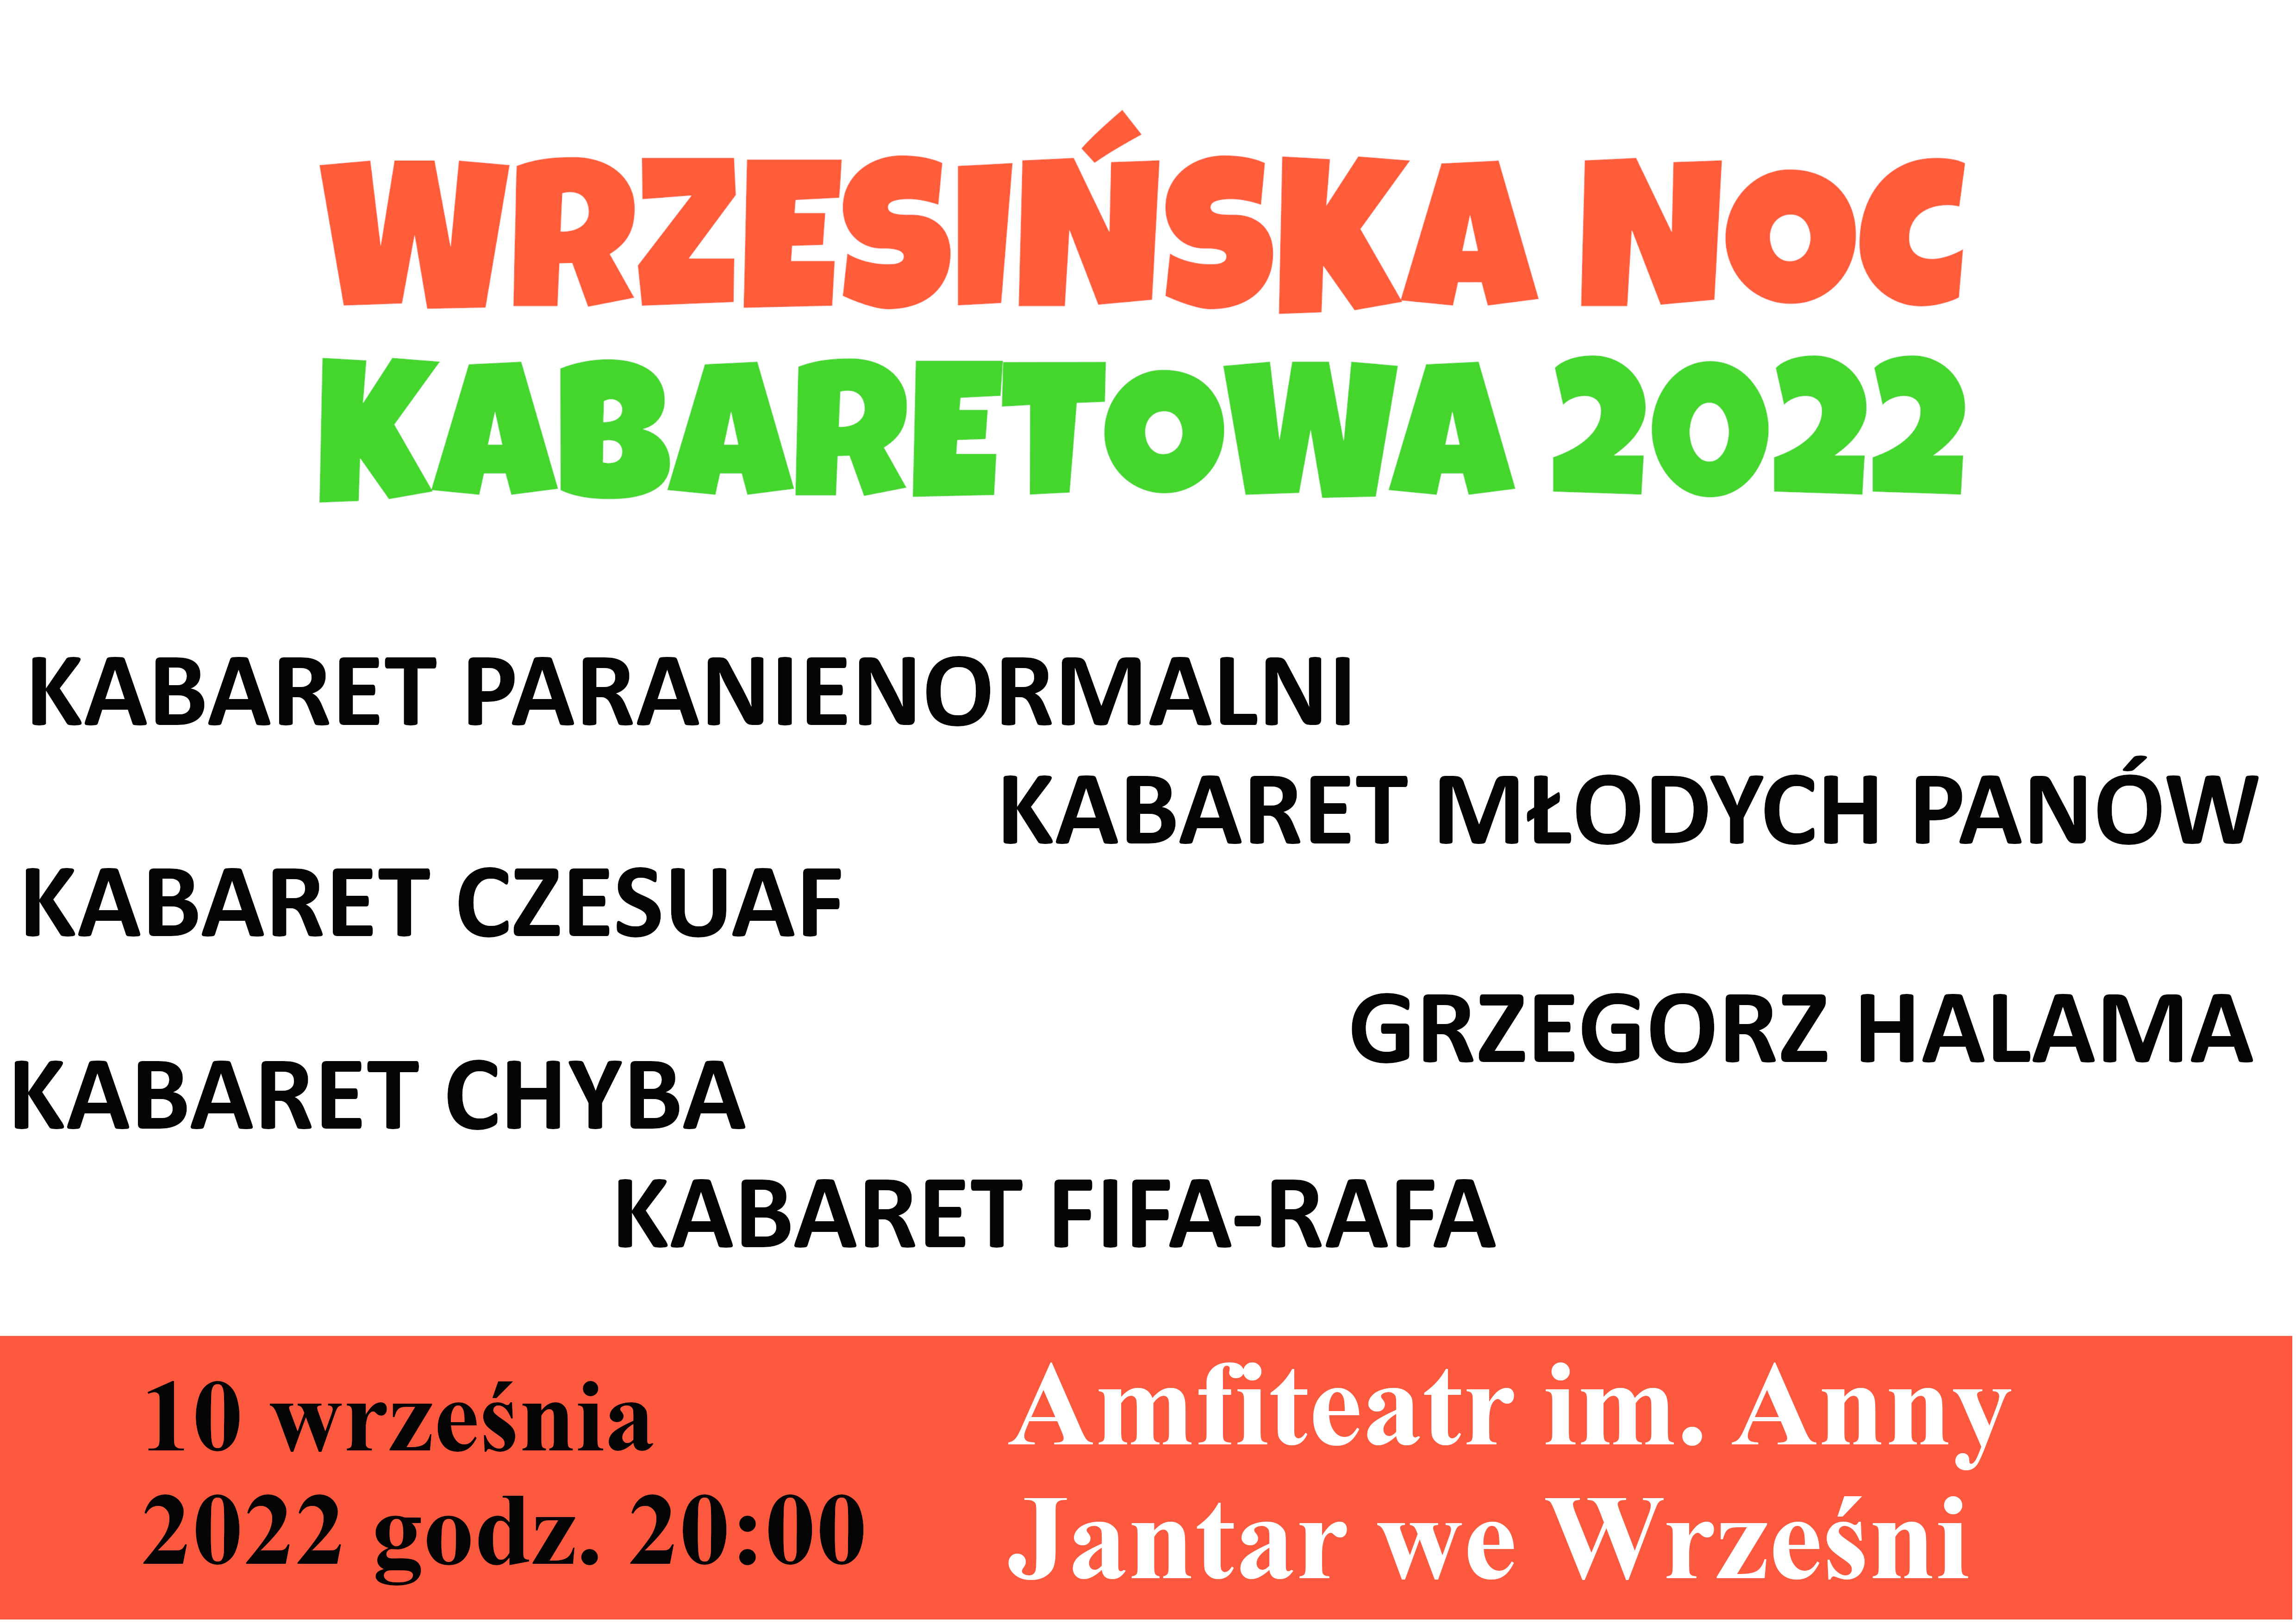 Plakat Wrzesińska Noc Kabaretowa 2022 61622